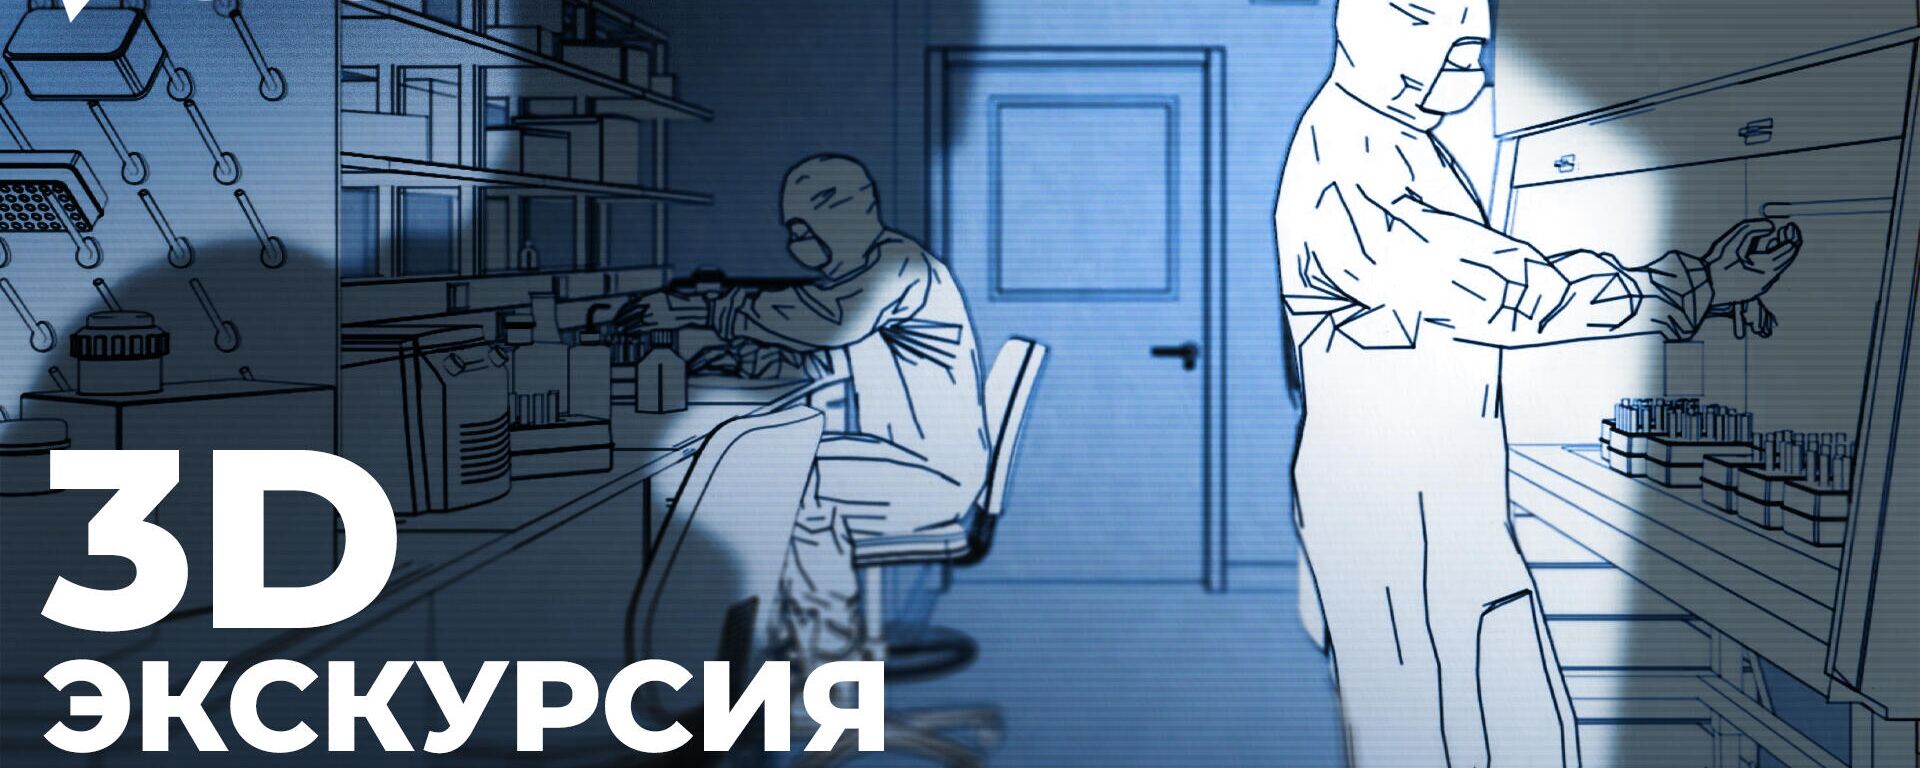 Все об испытаниях США на пациентах психбольницы в Харькове за 4 минуты. Видео - Sputnik Латвия, 1920, 17.04.2022